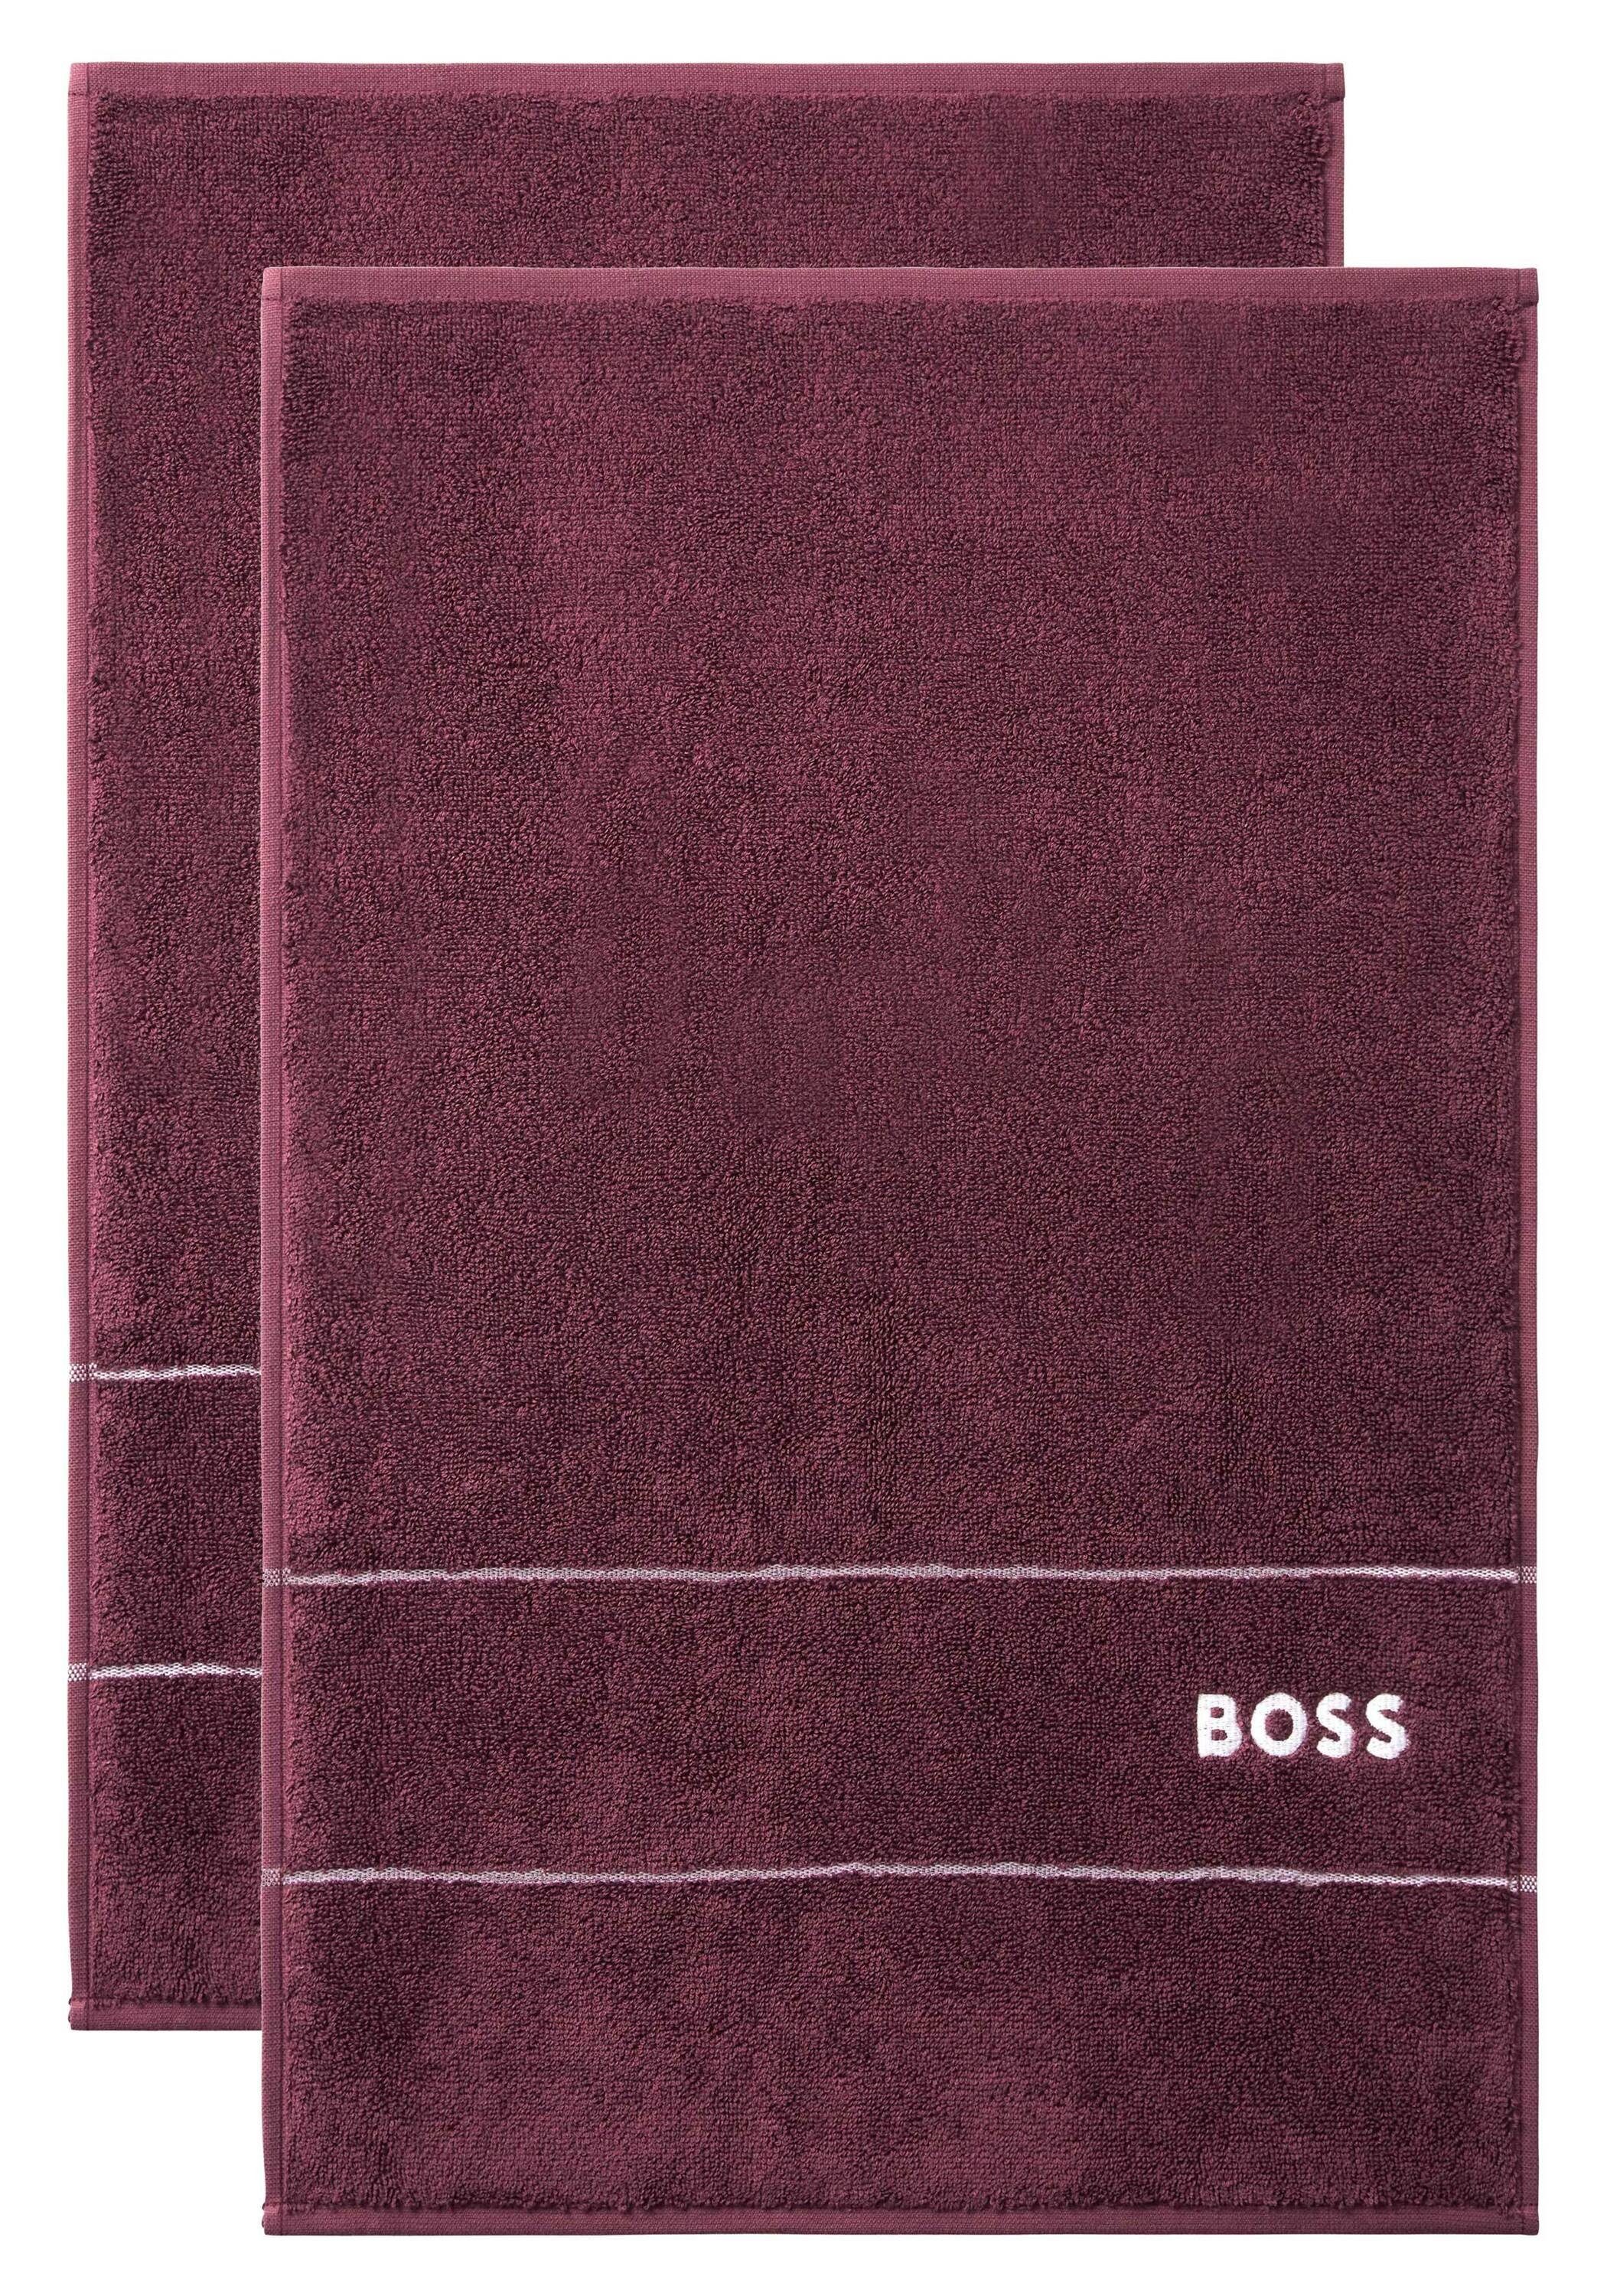 Hugo Boss Home Gästehandtücher PLAIN Baumwolle, BURGUNN mit modernem 100% Design (2tlg)